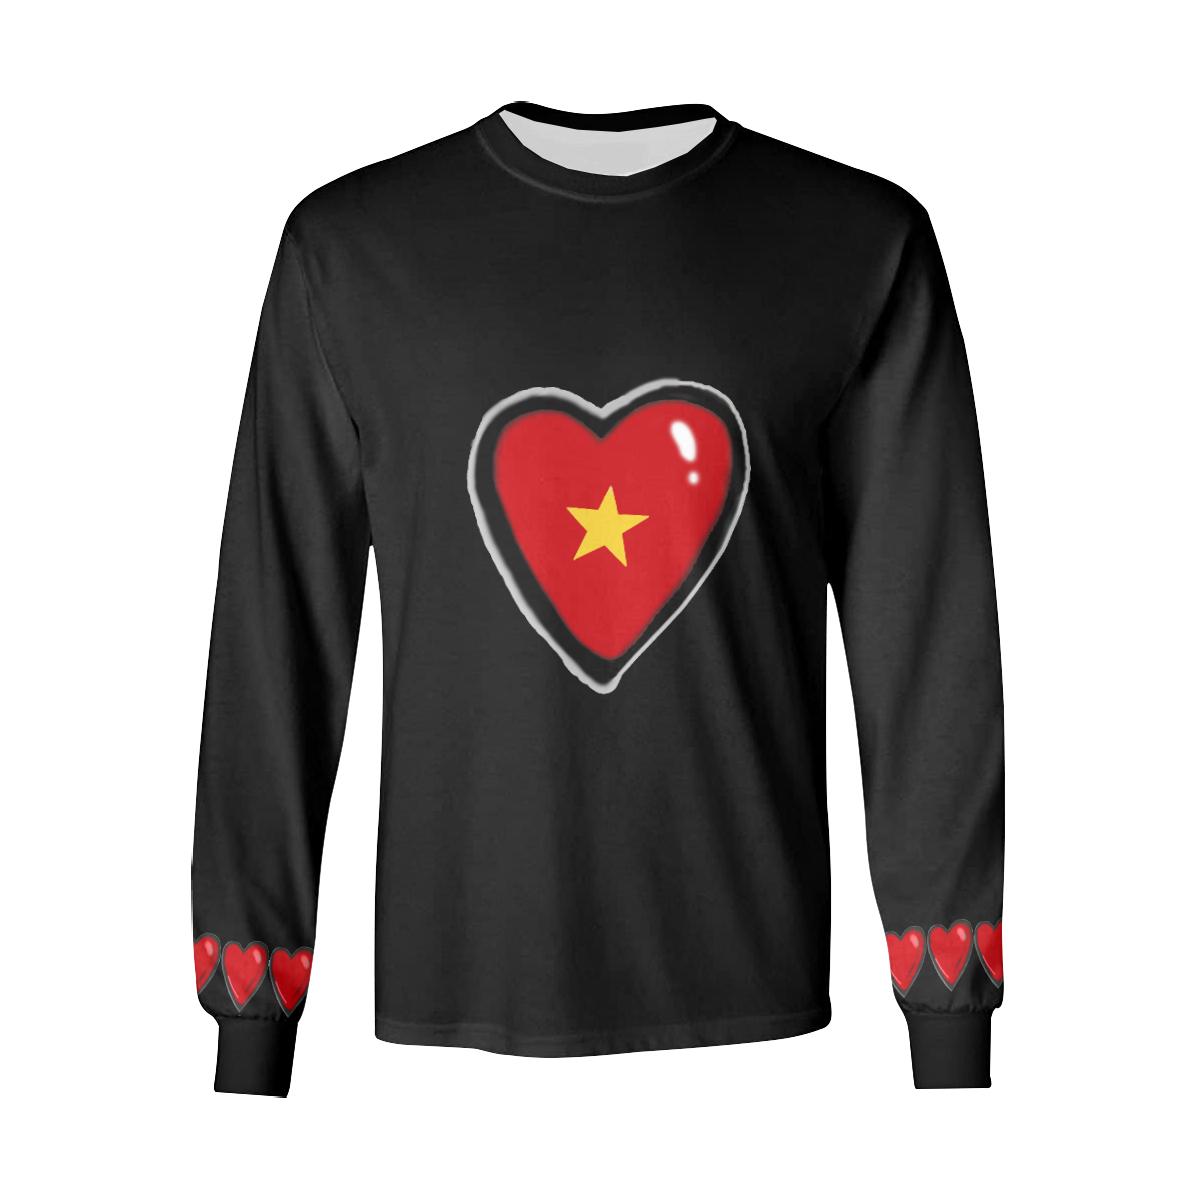 Heart Chain Long Sleeve T-Shirt by interestprint - East Hills Casuals